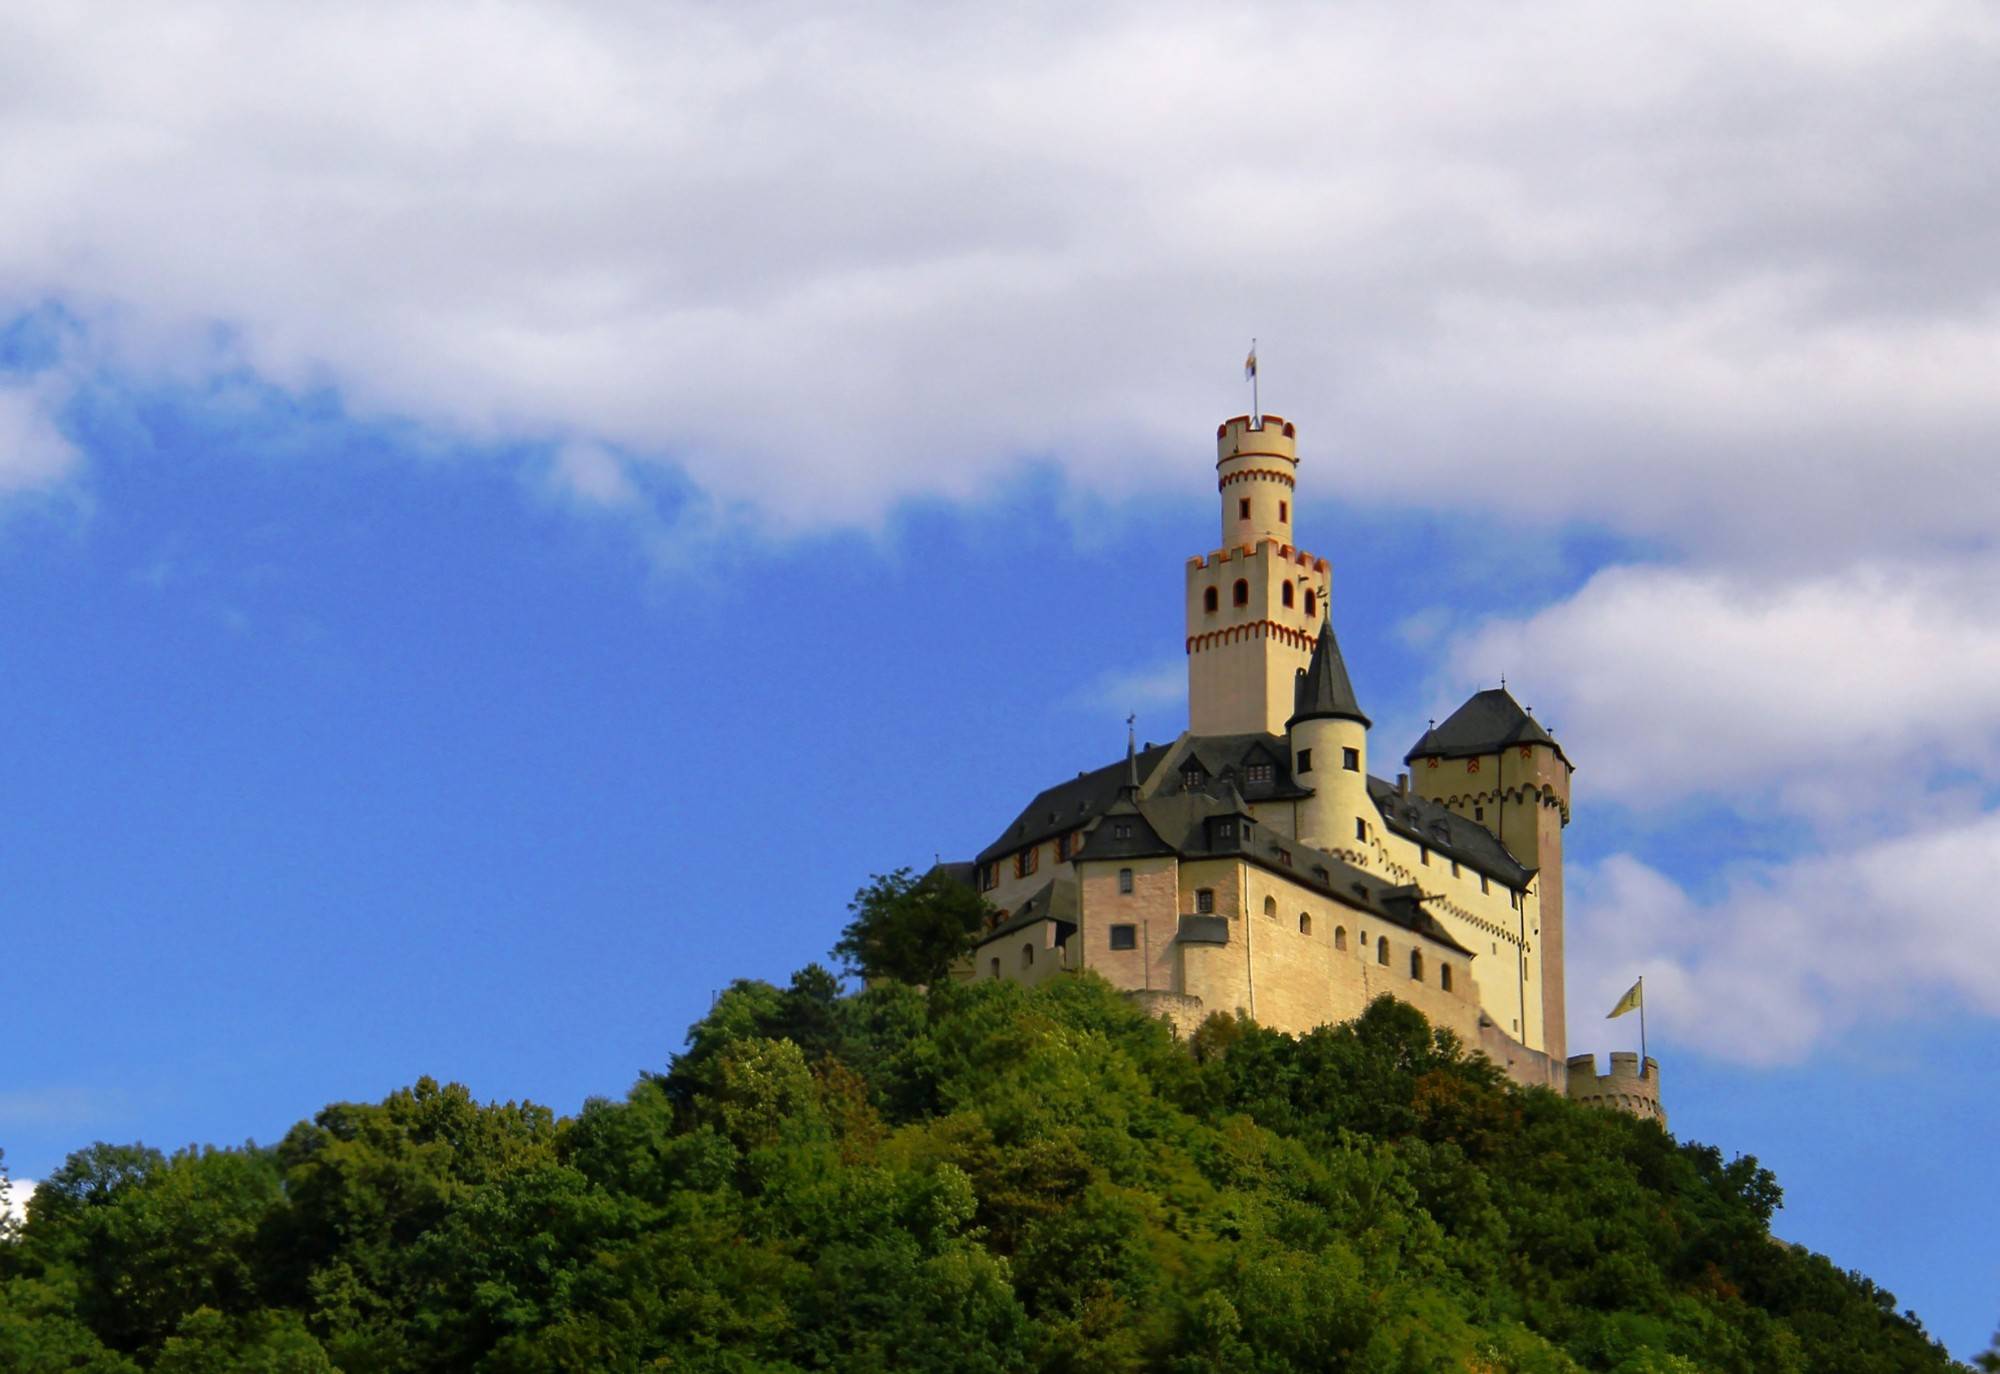 Гейдельбергский замок и самая большая винная бочка в мире